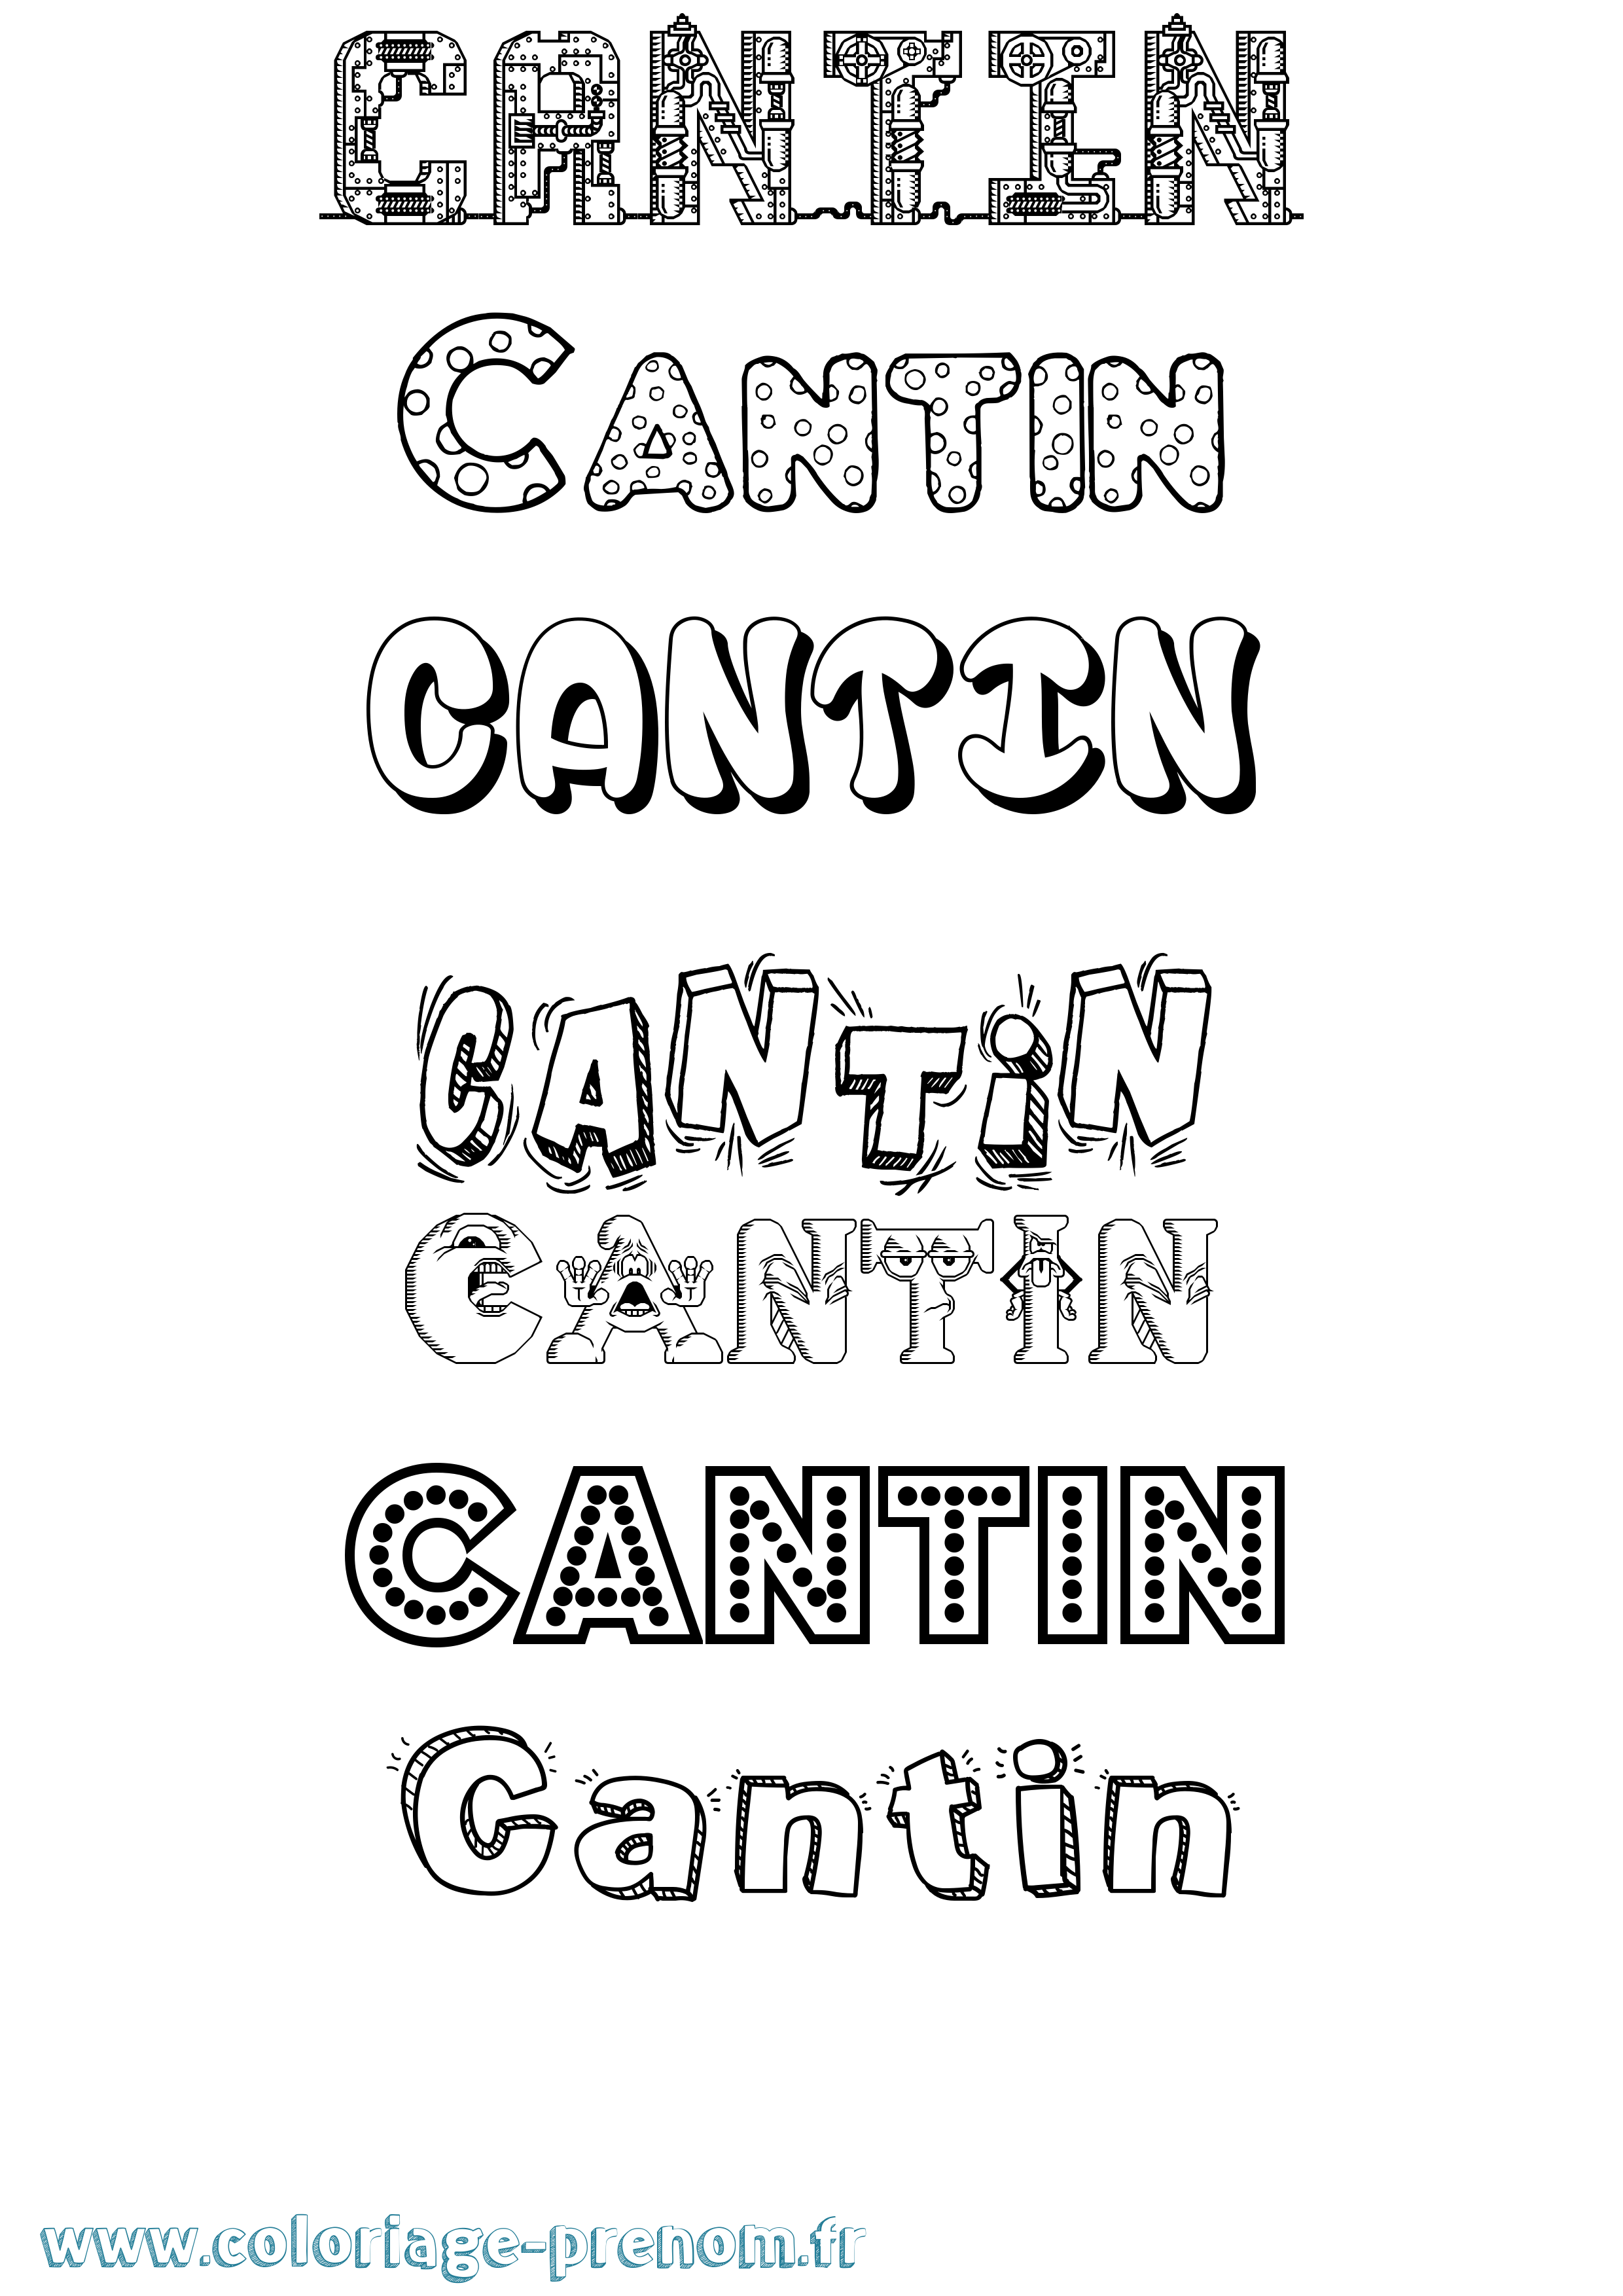 Coloriage prénom Cantin Fun